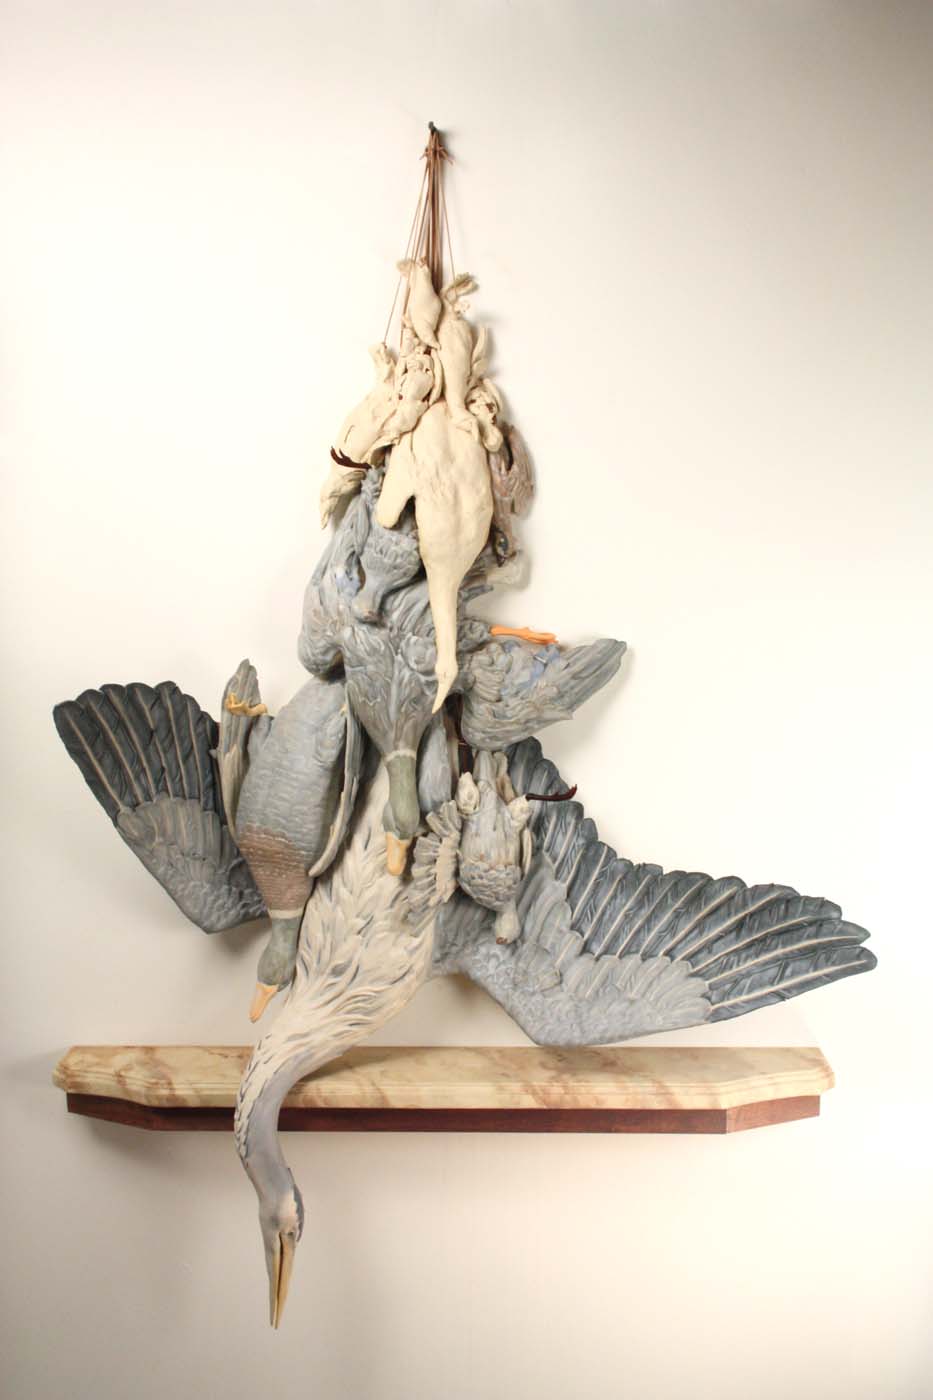 Birds in Hand Still Life Dutch Vanitas heron Sculpture by artist Dirk Staschke